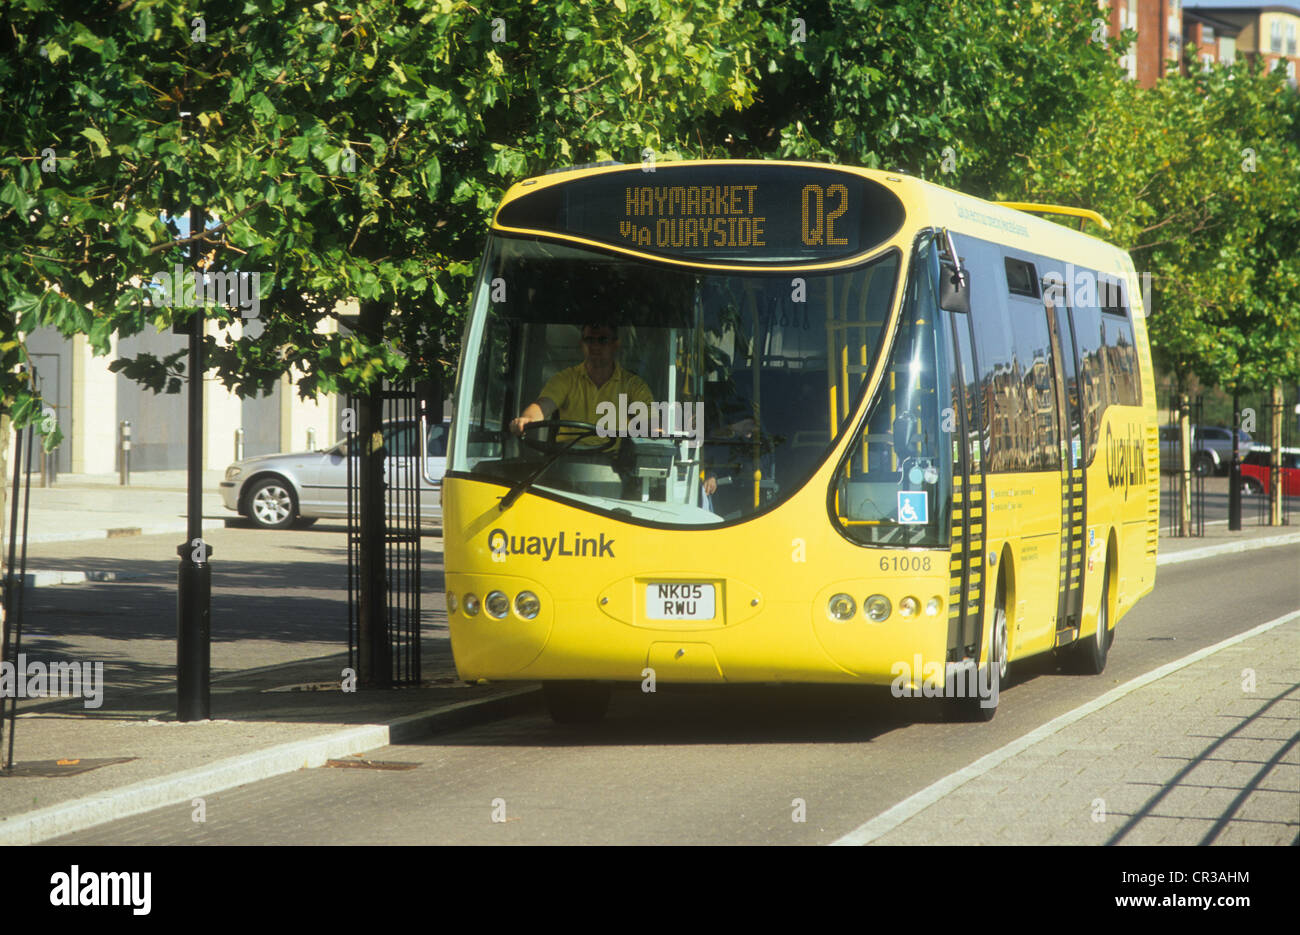 Quaylink Hybrid Electric Bus verbindet Newcastle Upon Tyne Stadtzentrum mit Gateshead Stadtzentrum entfernt im Norden Englands. Stockfoto